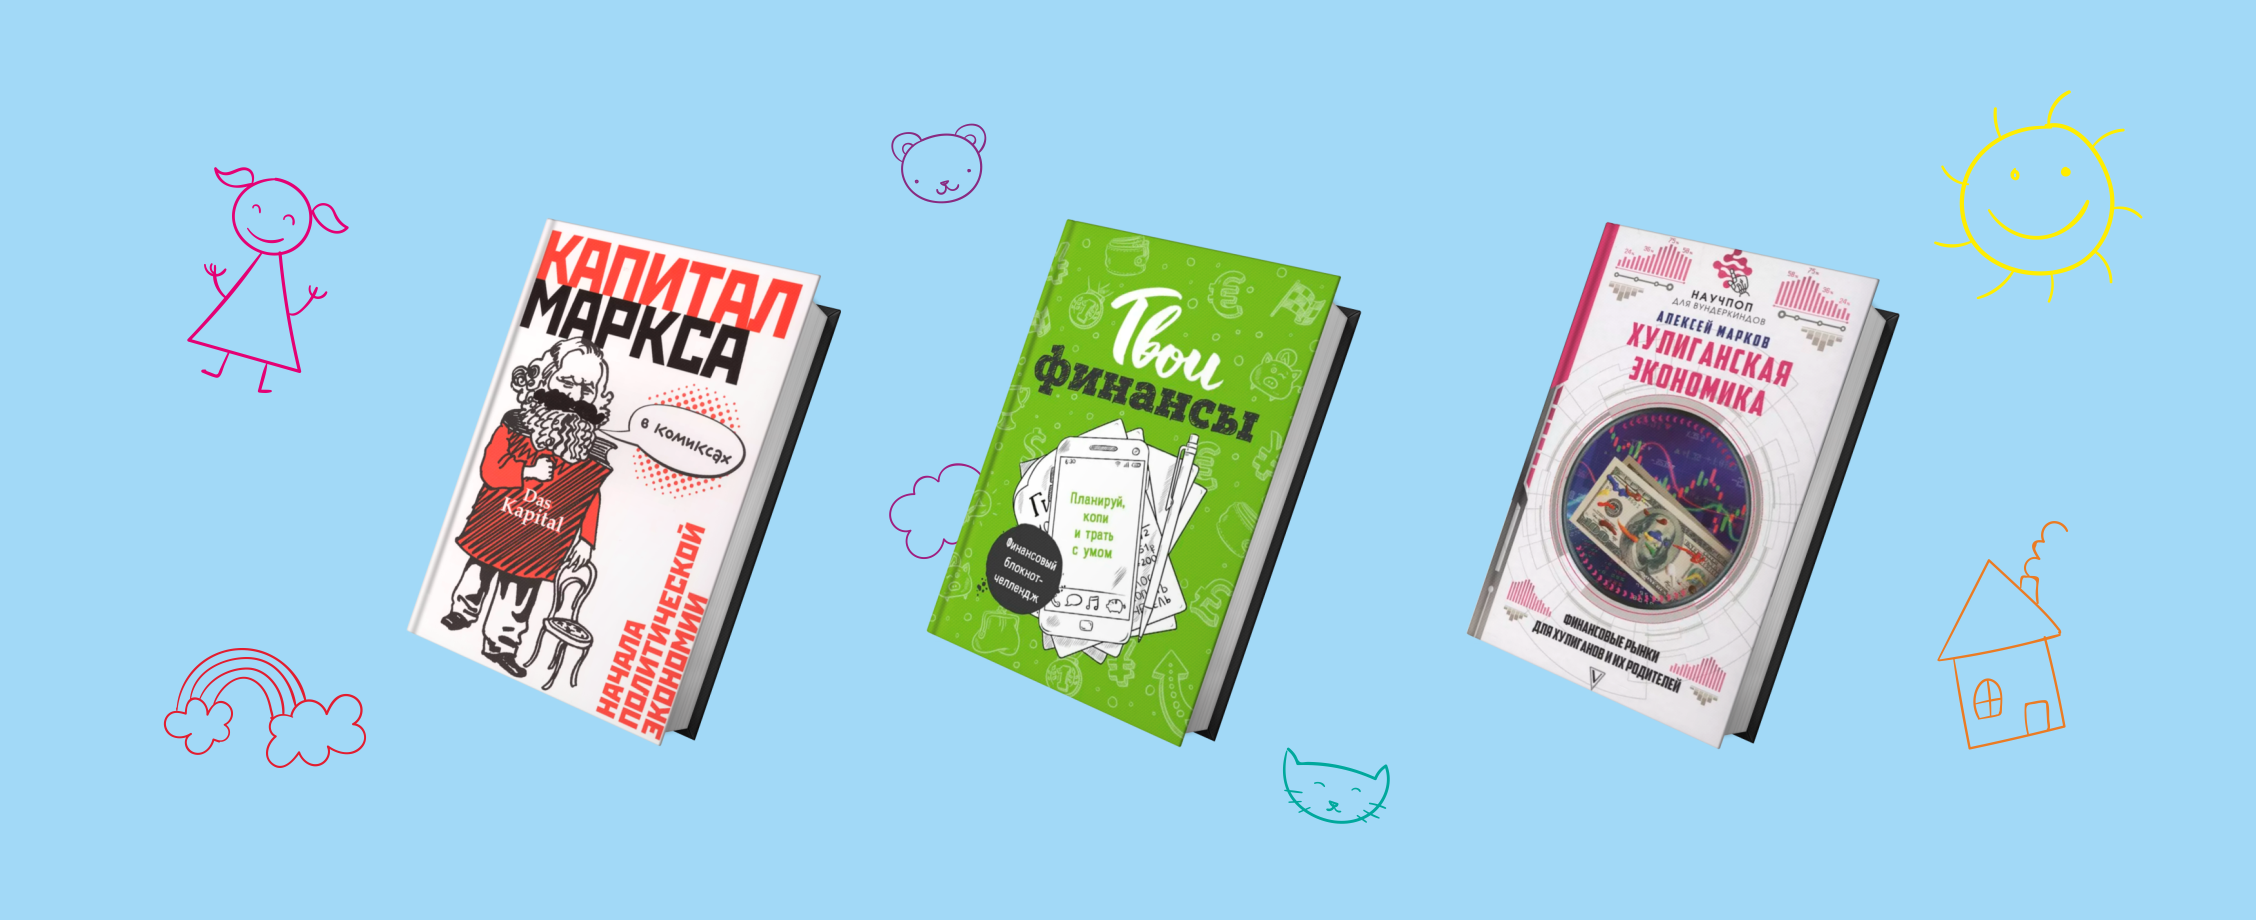 Личный бизнес-план, акции, Маркс в комиксах: пять книг, которые помогут подростку понять экономику